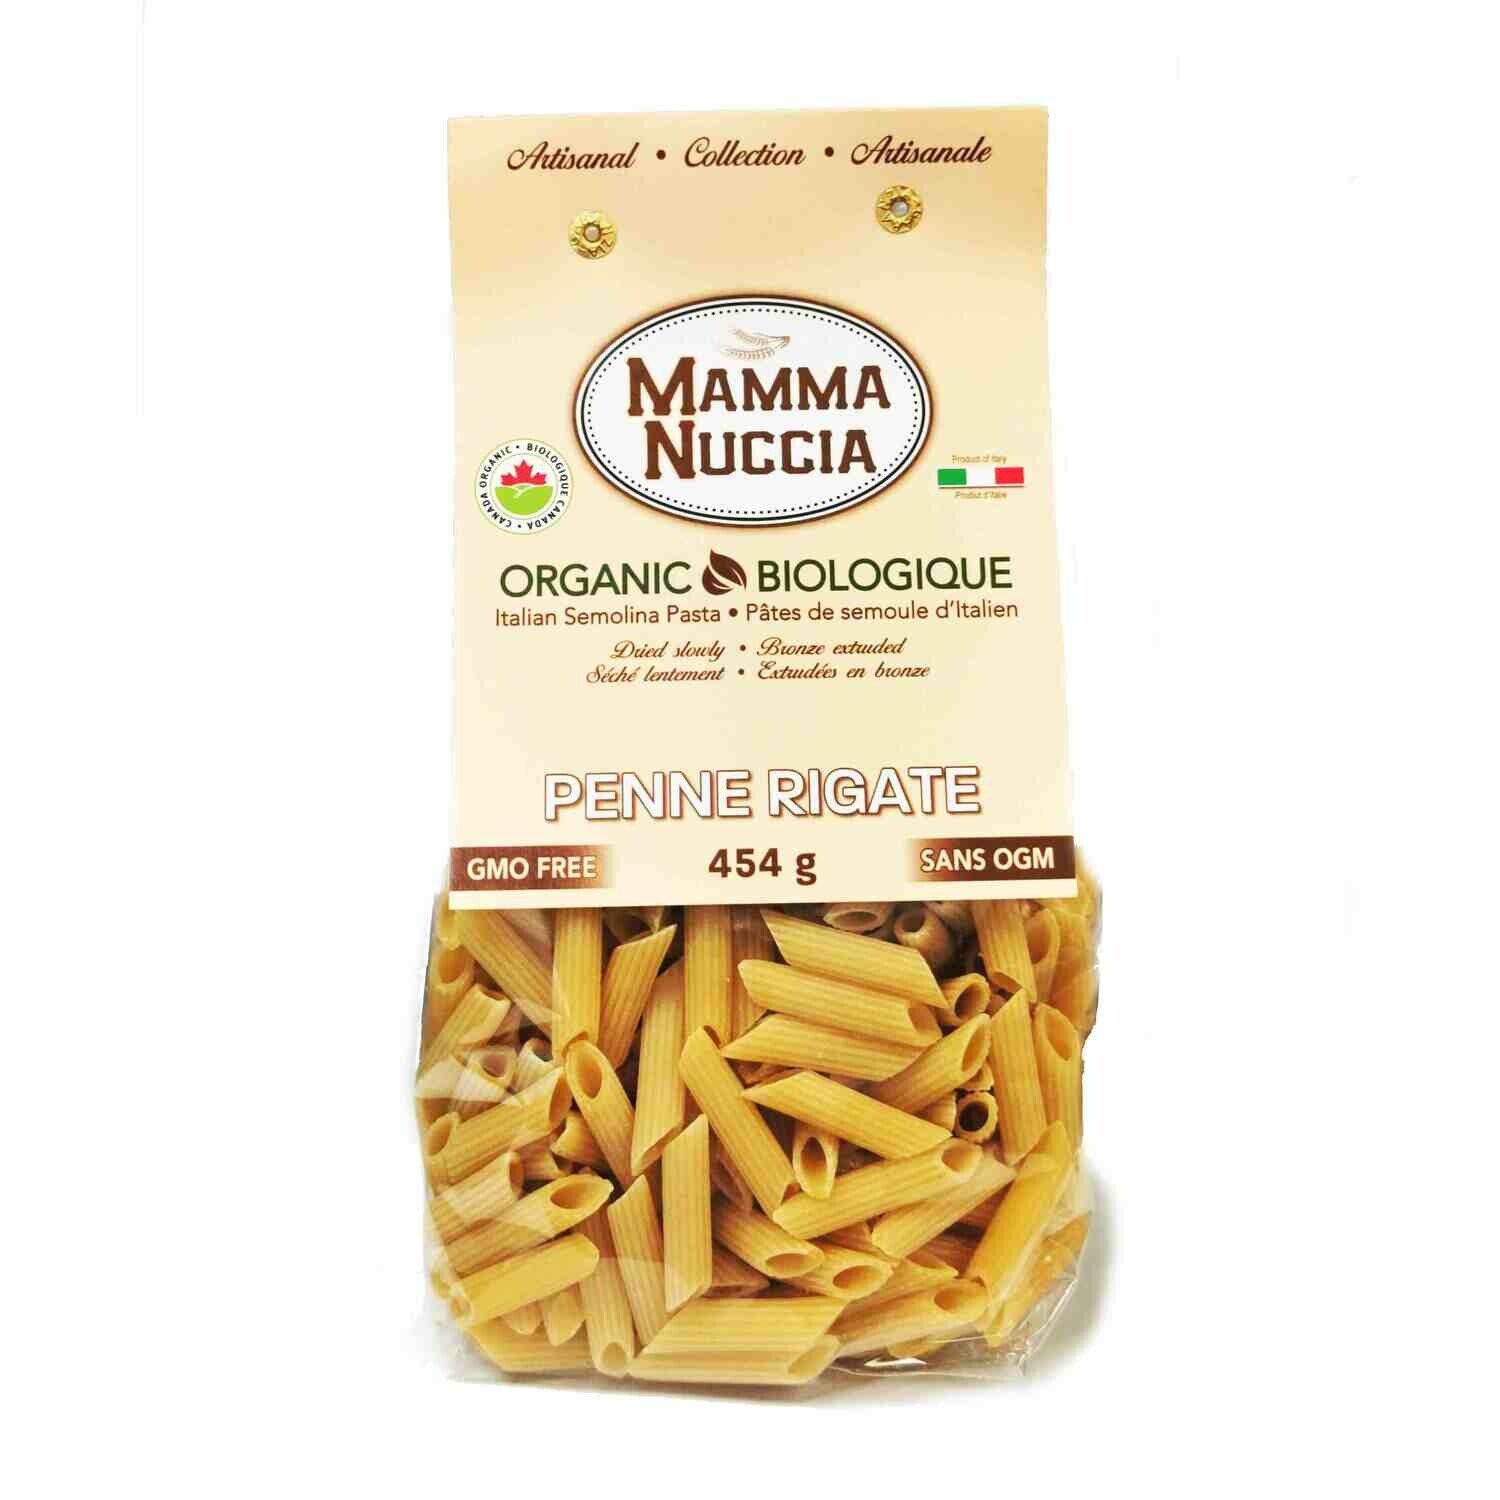 Mamma Nuccia - Penne Rigate (454g)